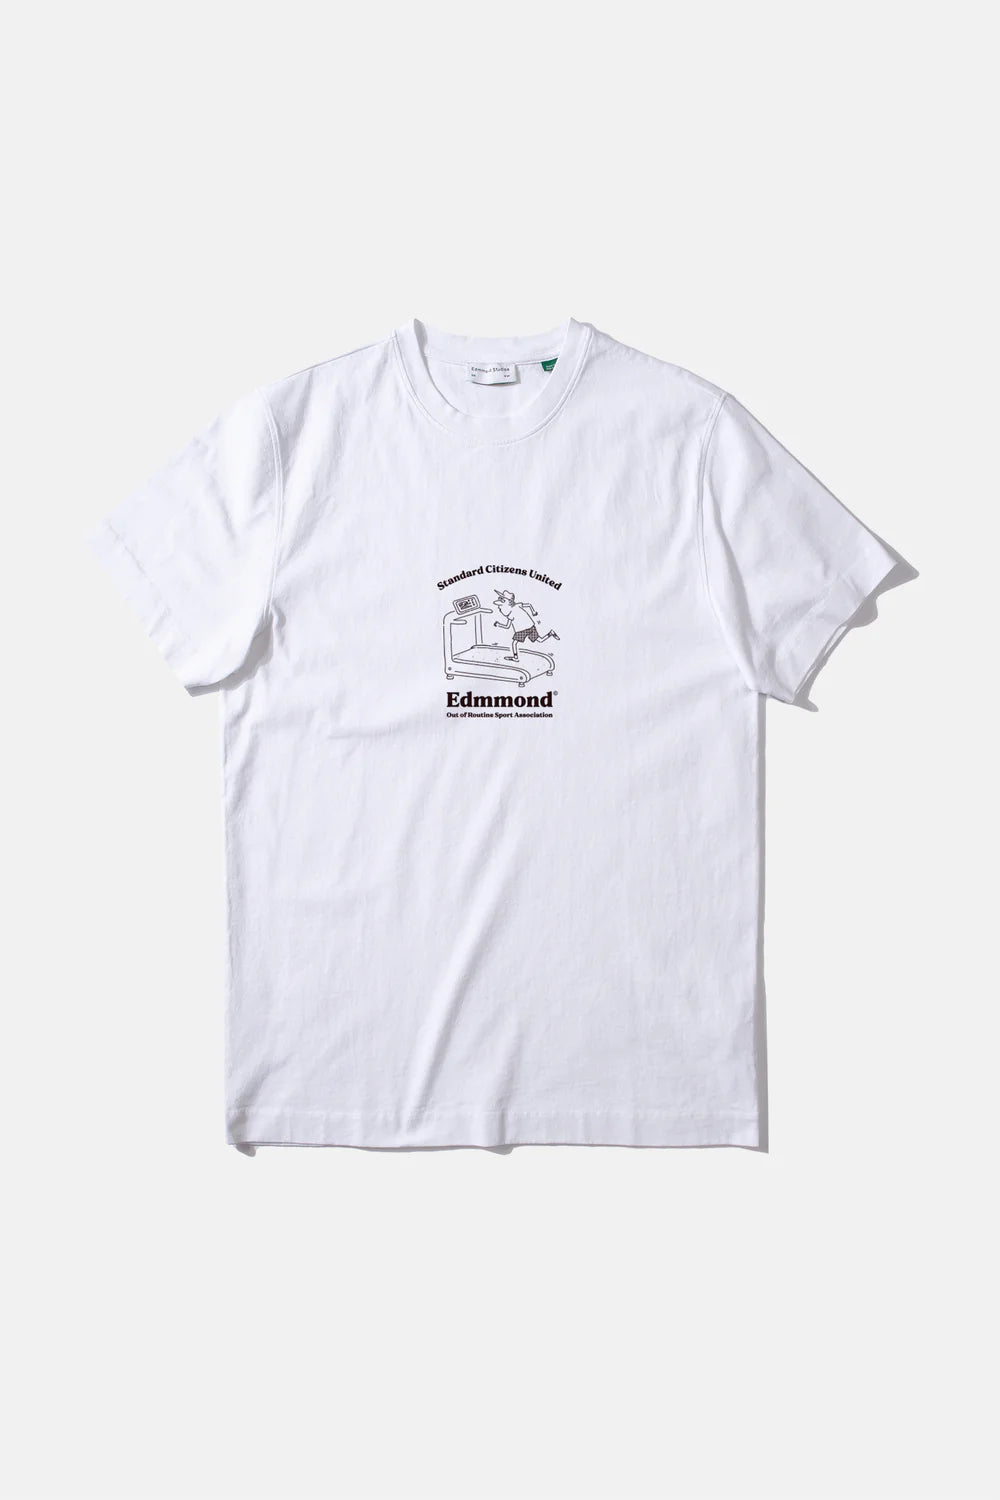 Edmmond Studios Runner Plain White T-Shirt